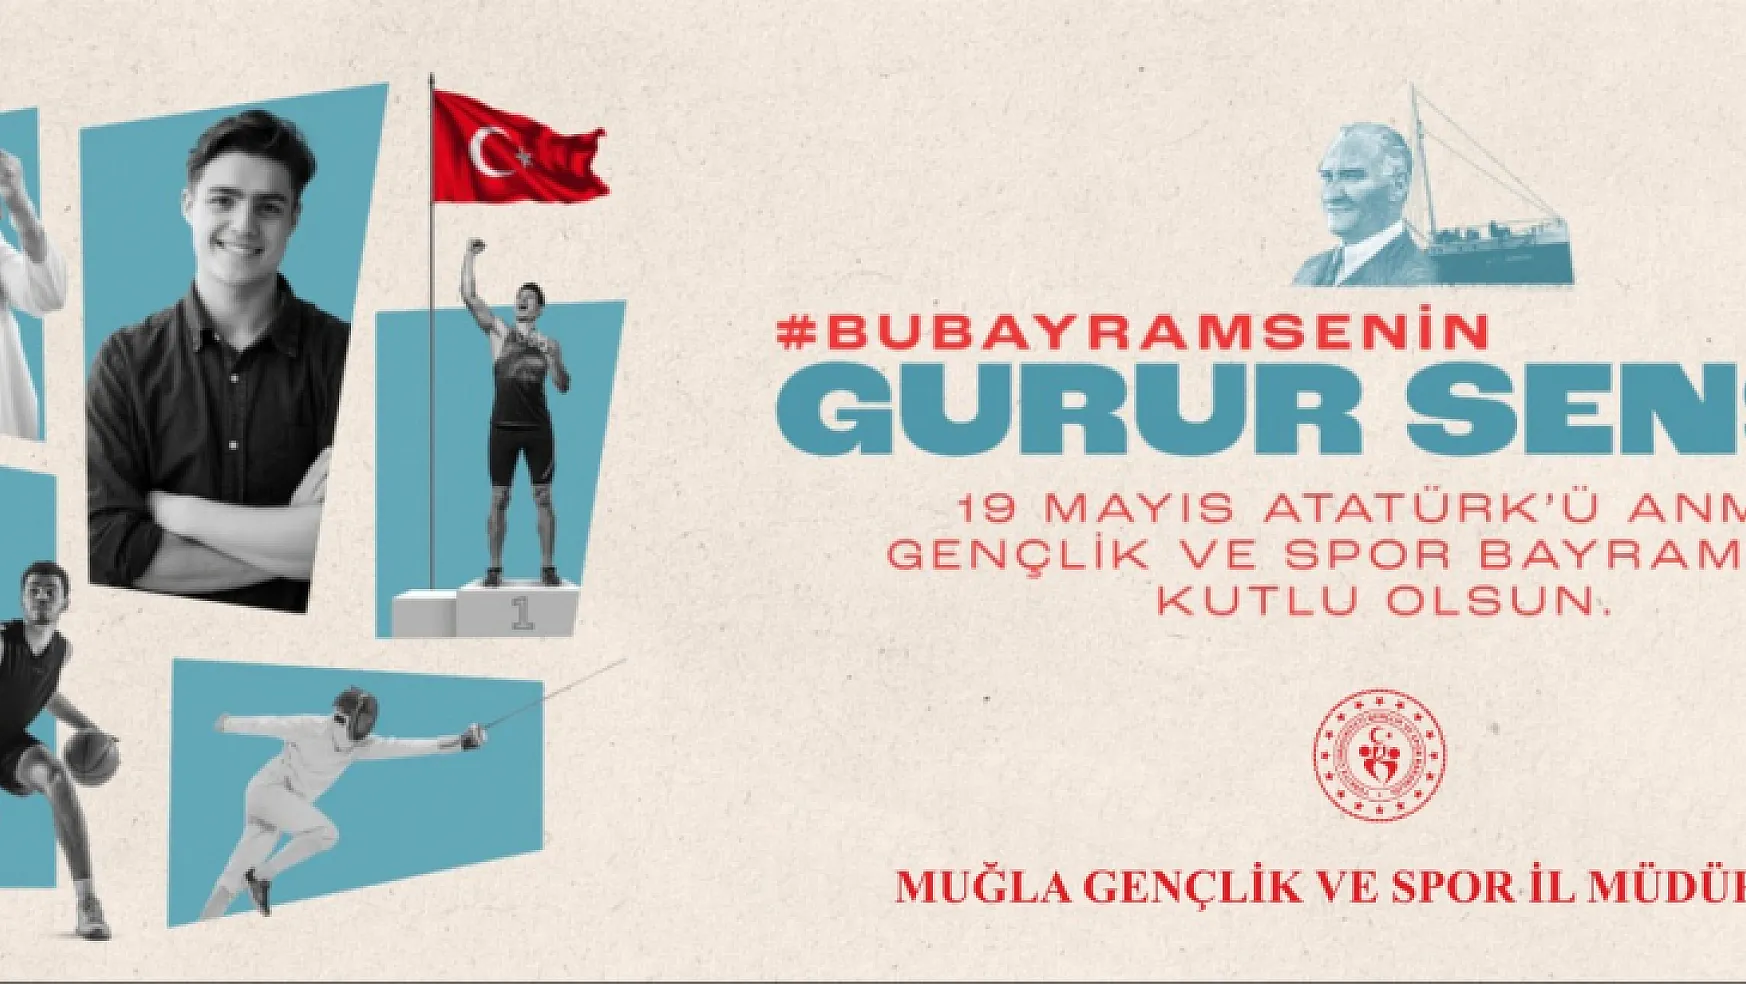 Muğla'da 19 Mayıs Atatürk'ü Anma Gençlik ve Spor Bayramı büyük bir coşkuyla kutlanacak